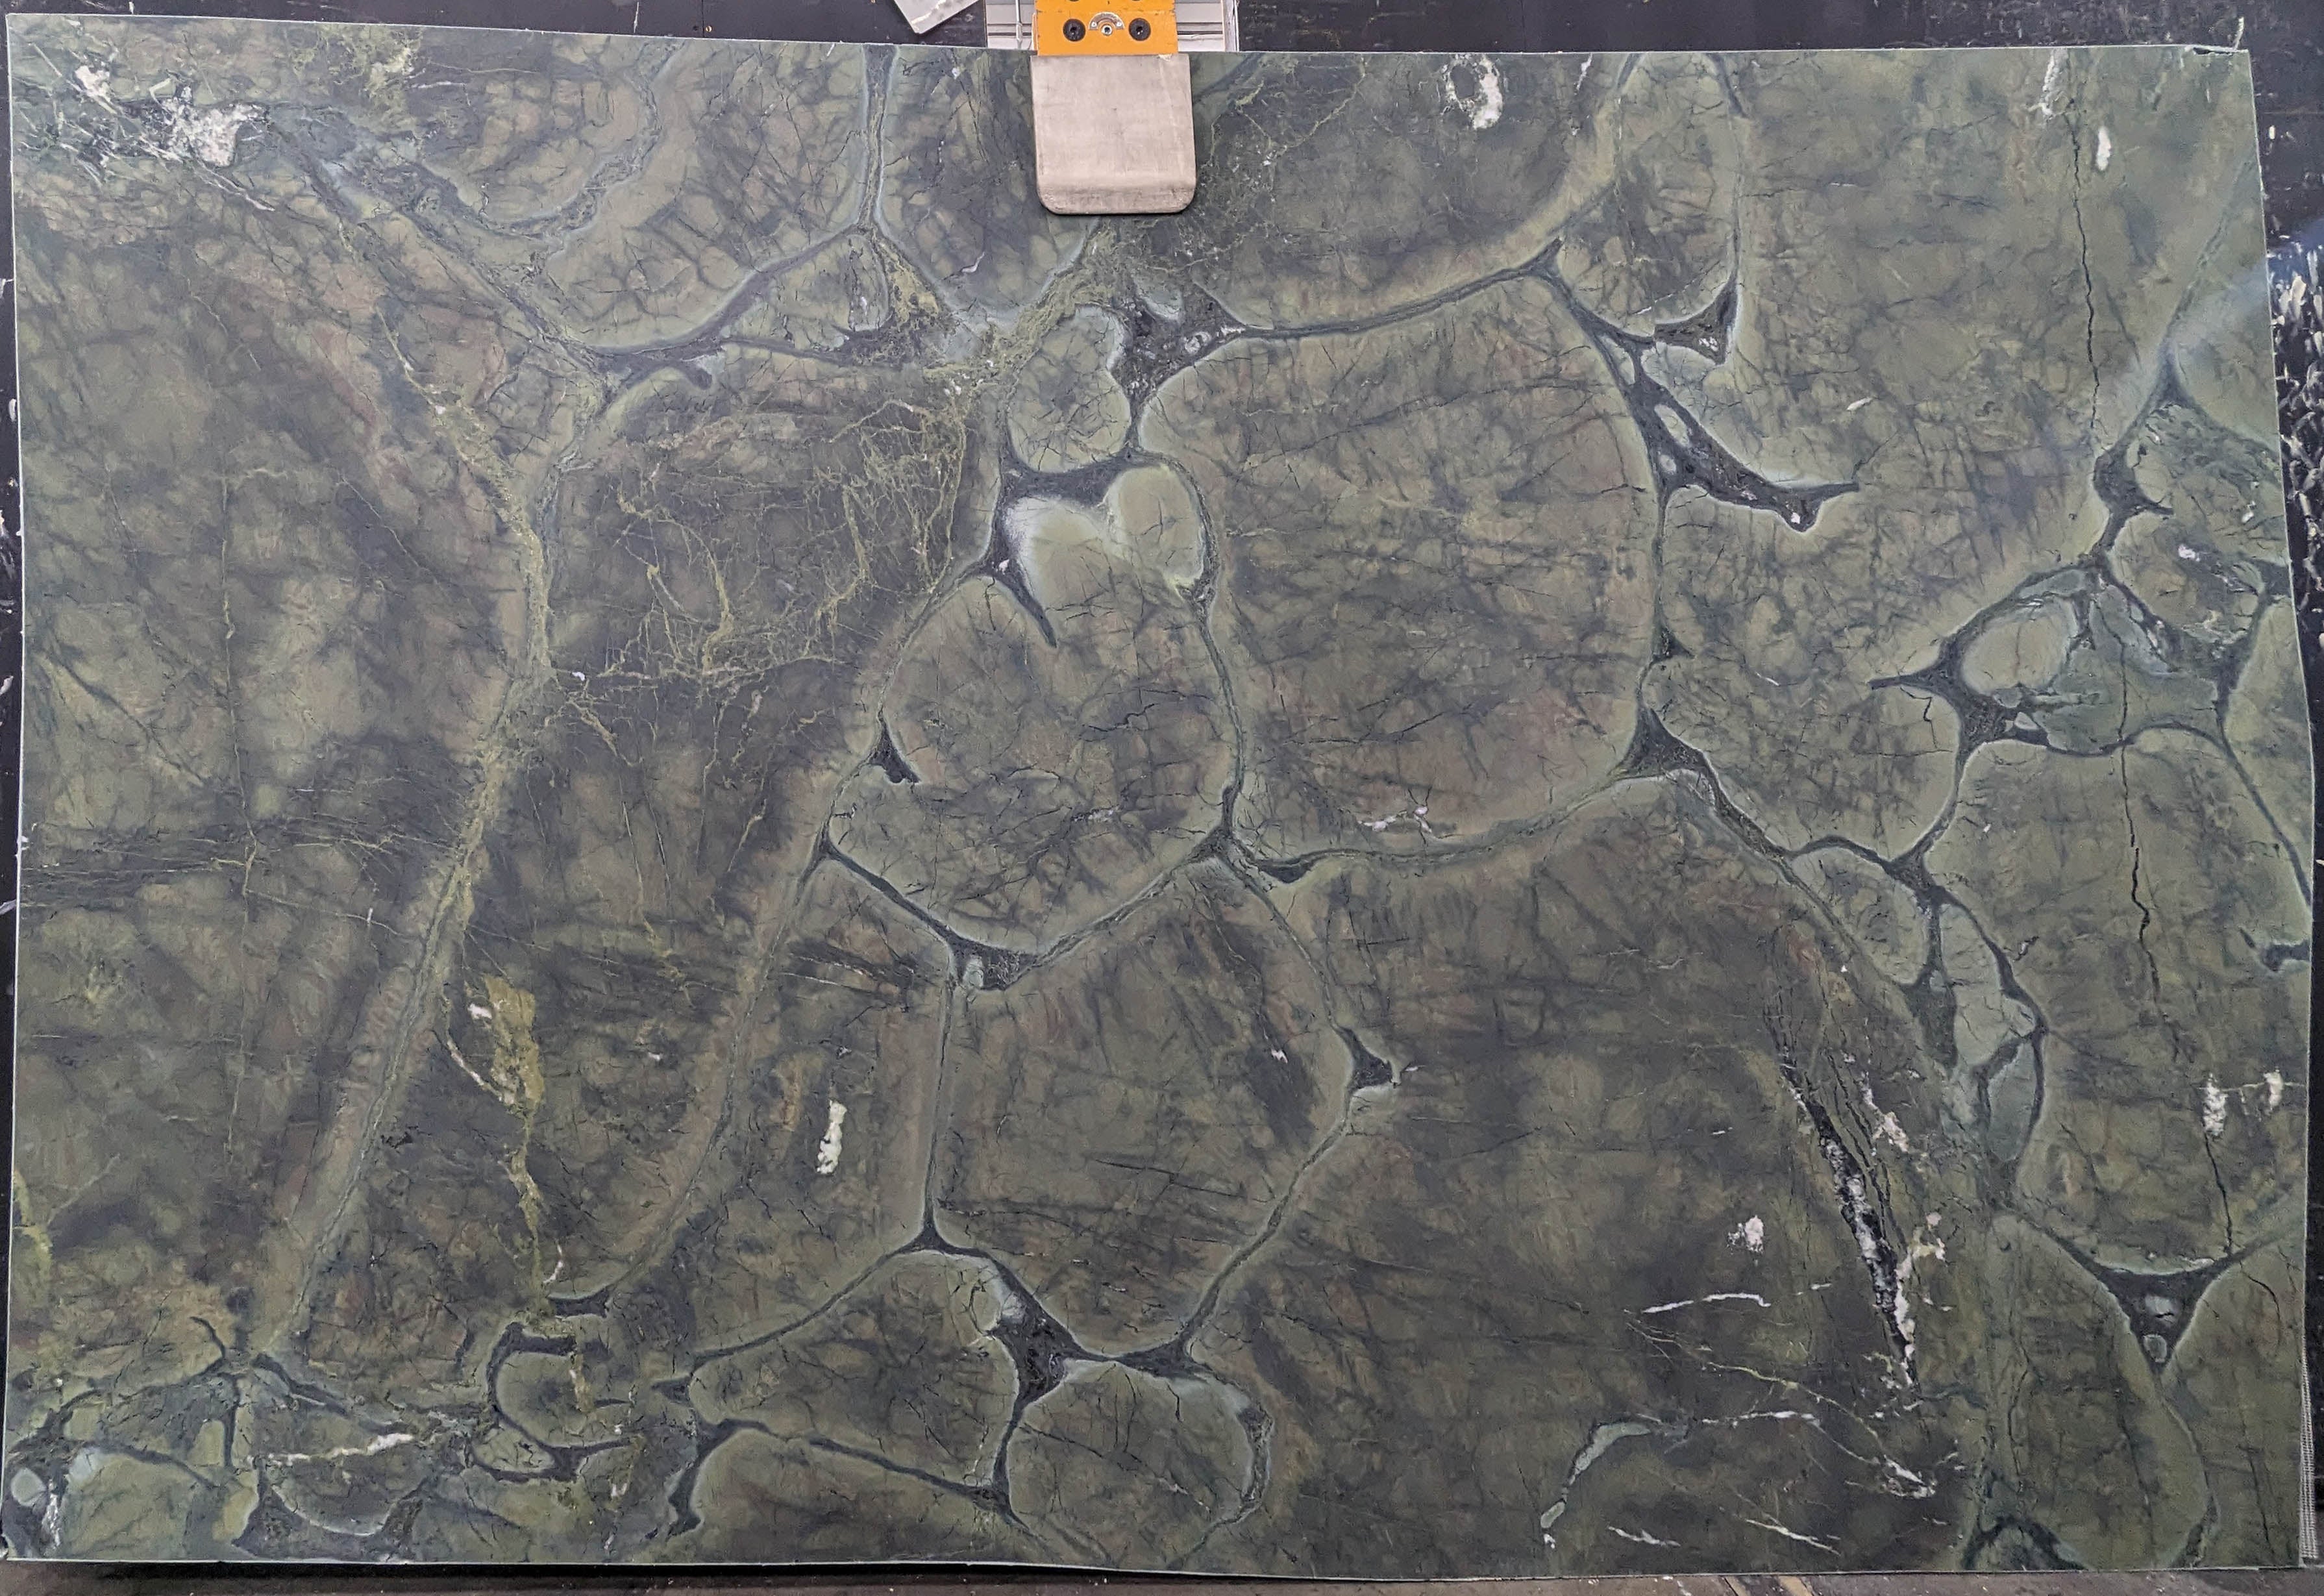  Vitorria Regia Quartzite Slab 3/4  Honed Stone - B050397#15 -  78x120 